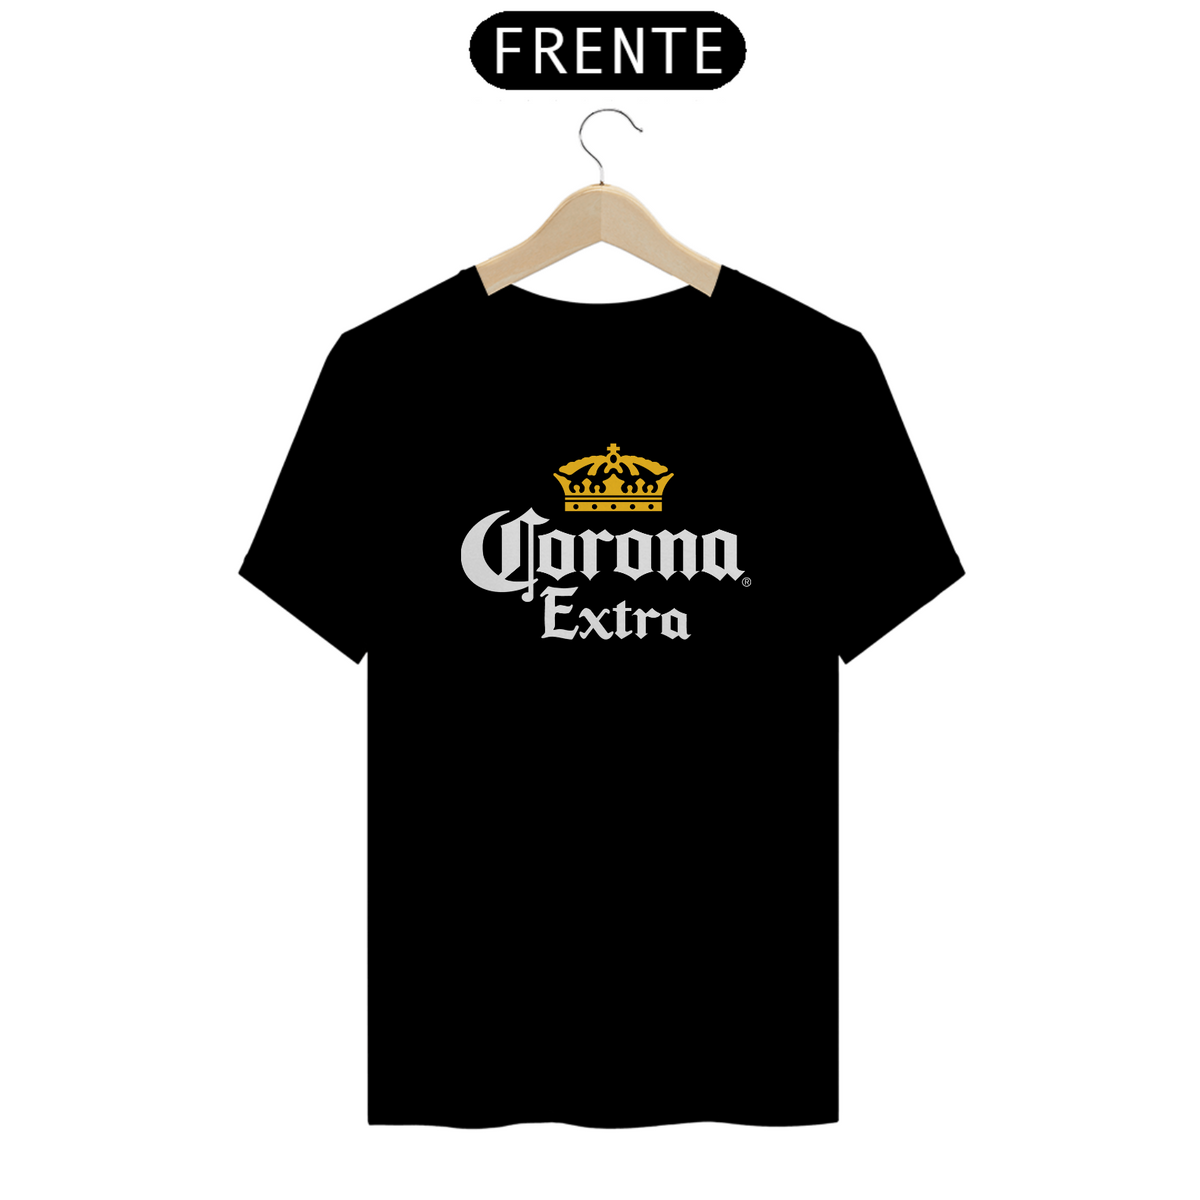 Nome do produto: Corona